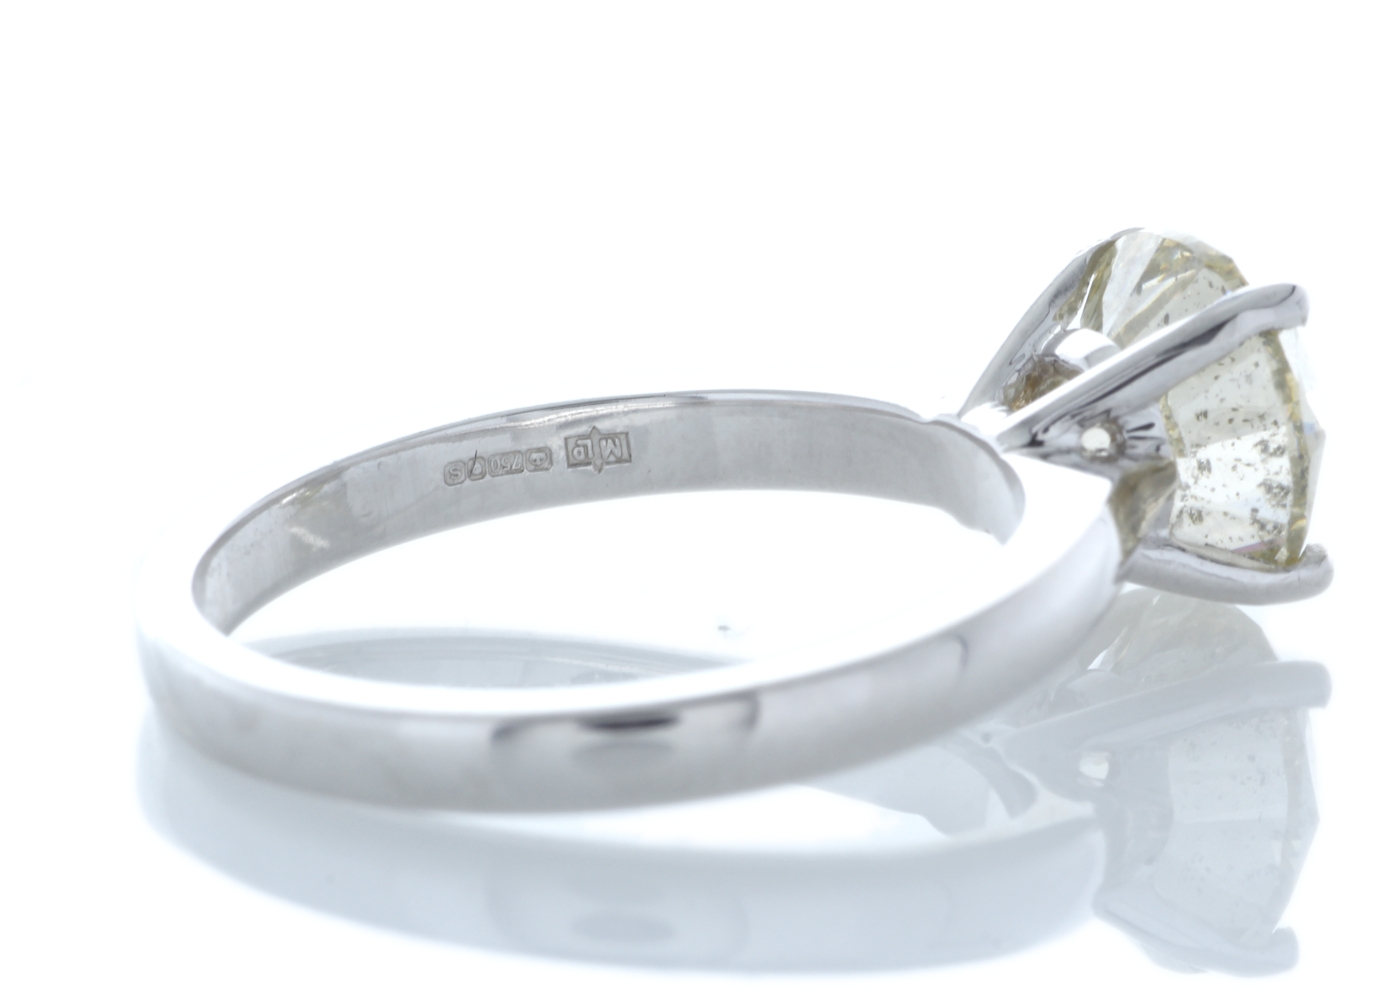 18ct White Gold Rex Set Diamond Ring 2.29 Carats - Image 3 of 5